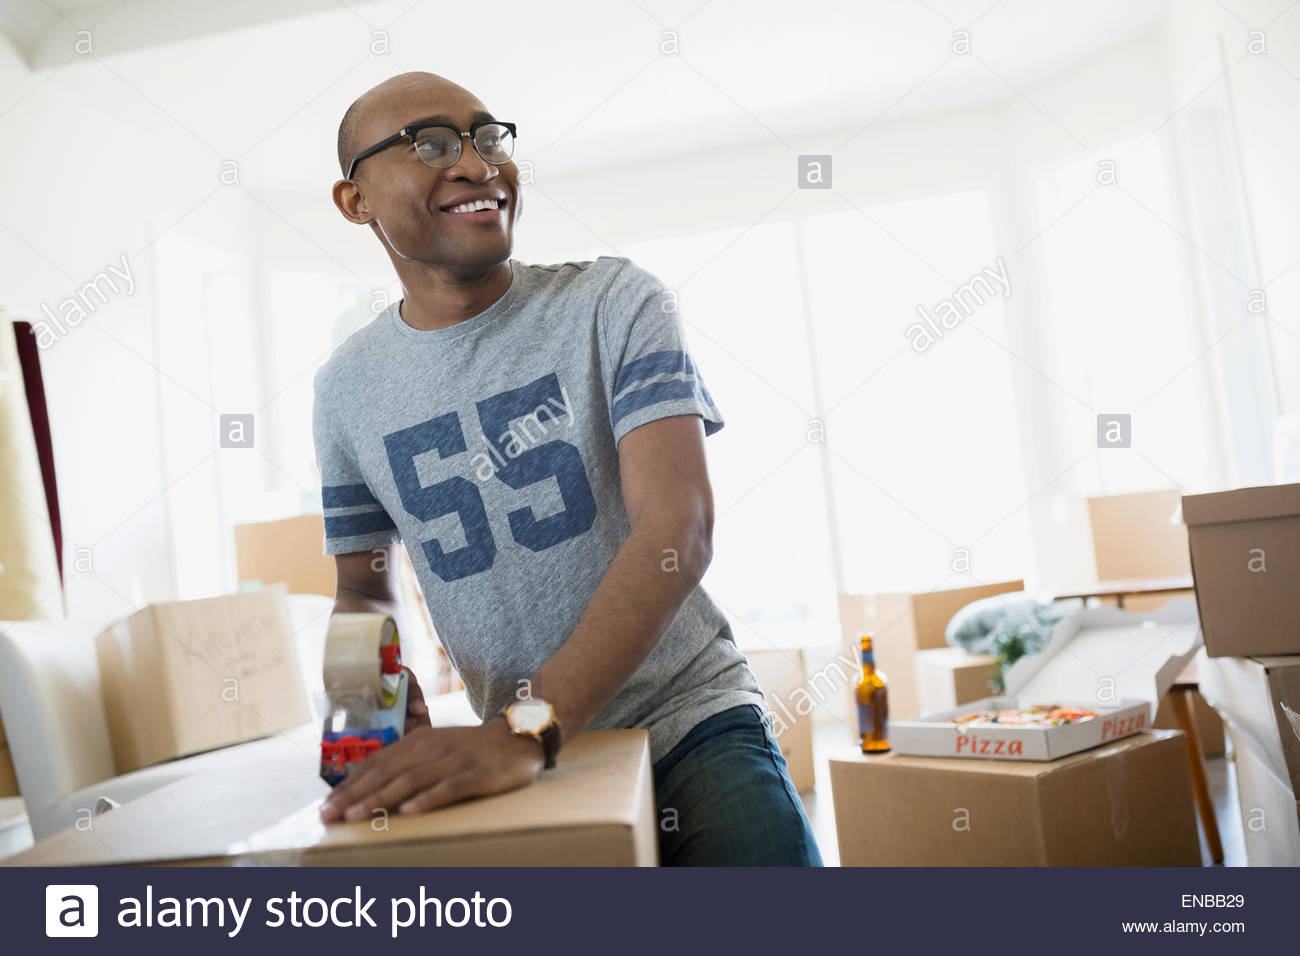 Smiling man taping moving box Stock Photo